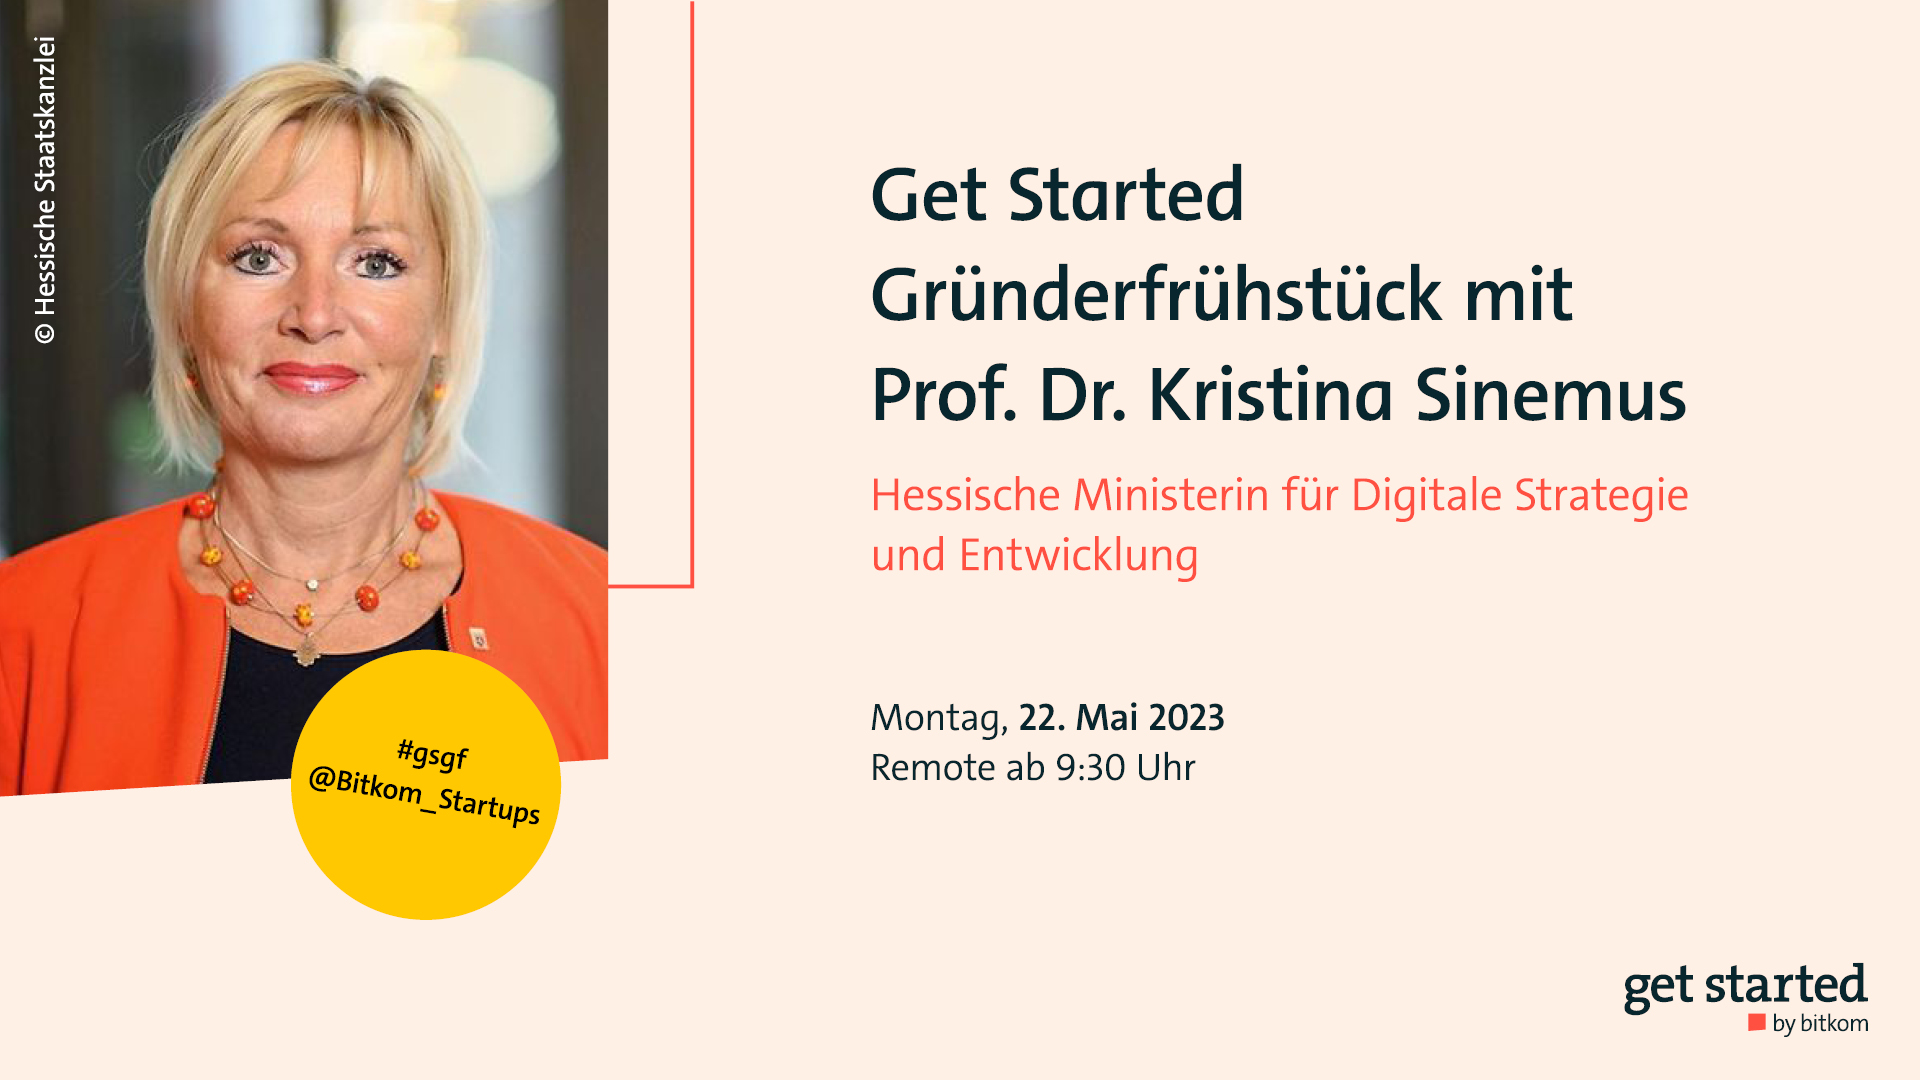 Get Started Gründerfrühstück mit Prof. Dr. Kristina Sinemus